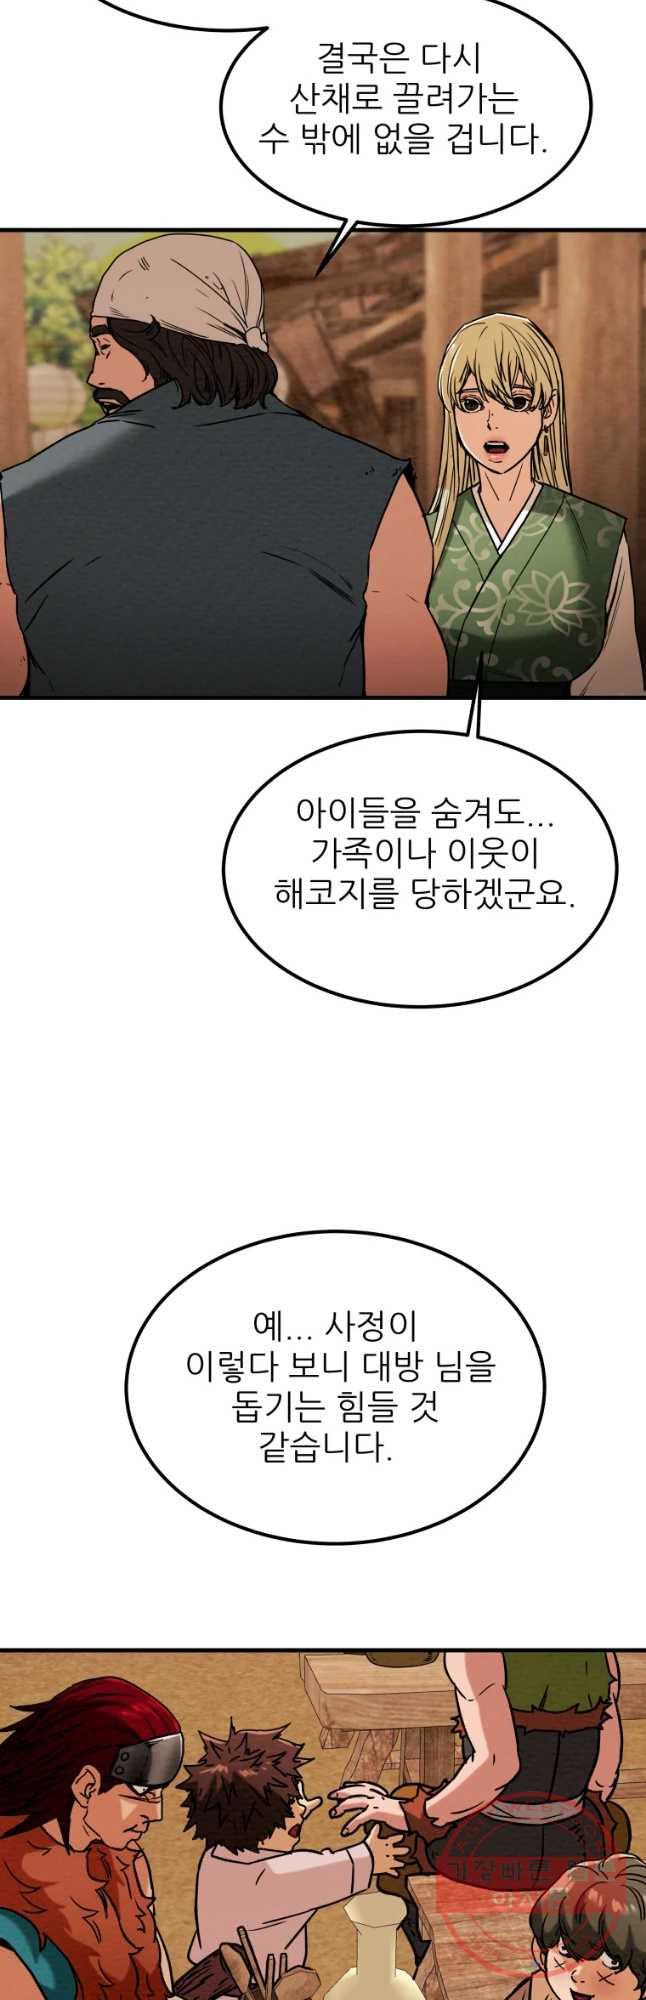 천광명월 29화_9